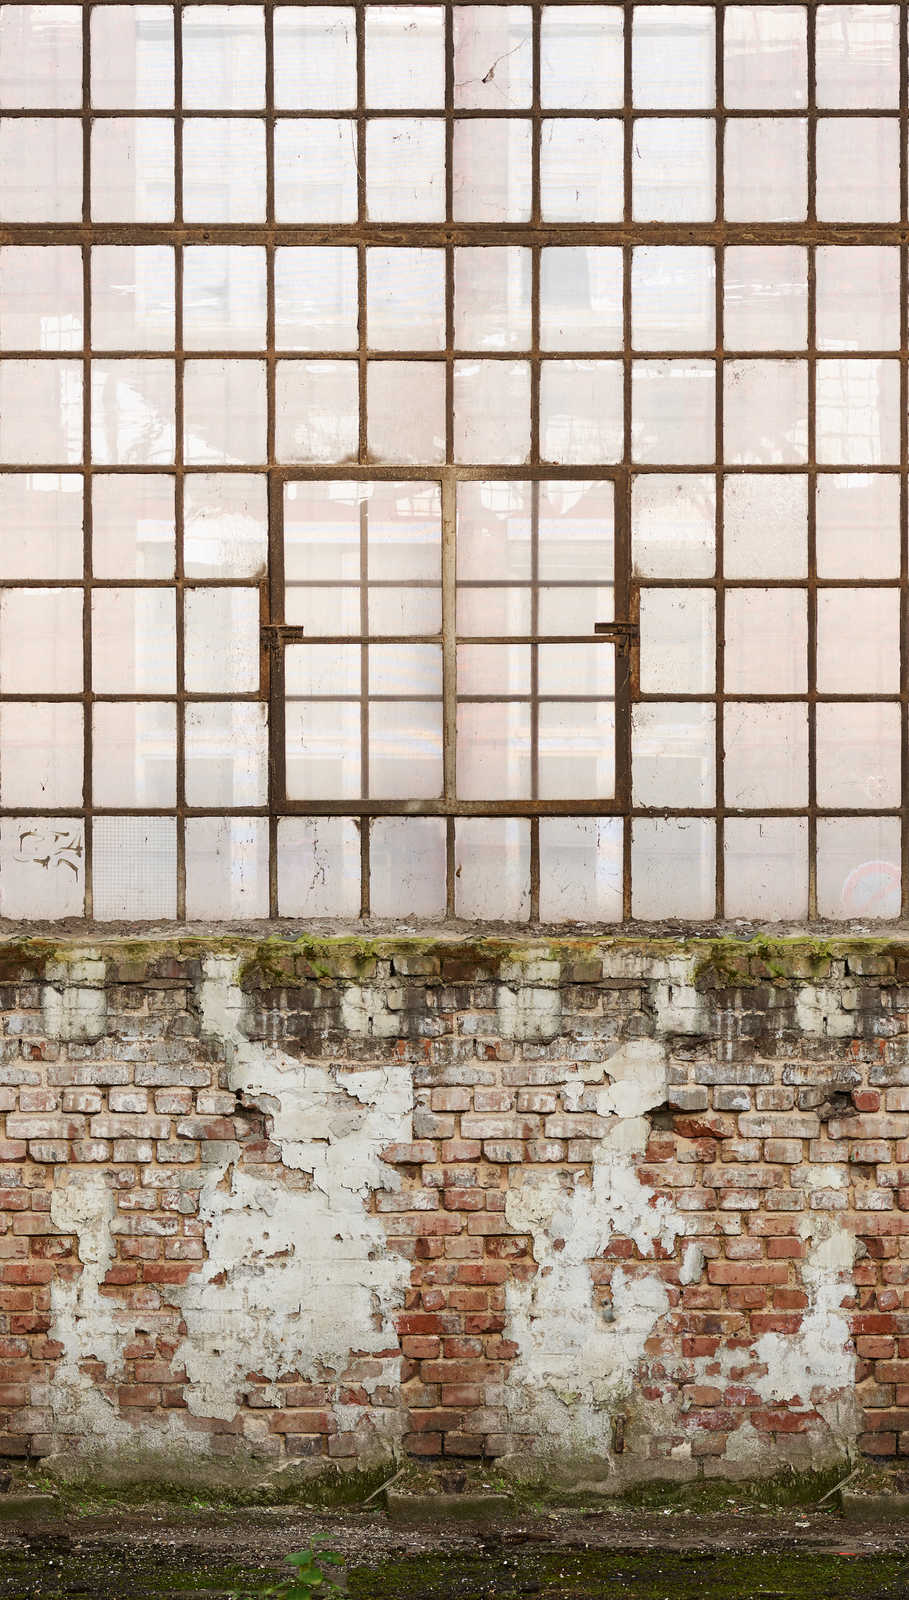             Vliestapete mit Ausschnitt von altem Fabrikgebäude – Creme, Braun, Grün
        